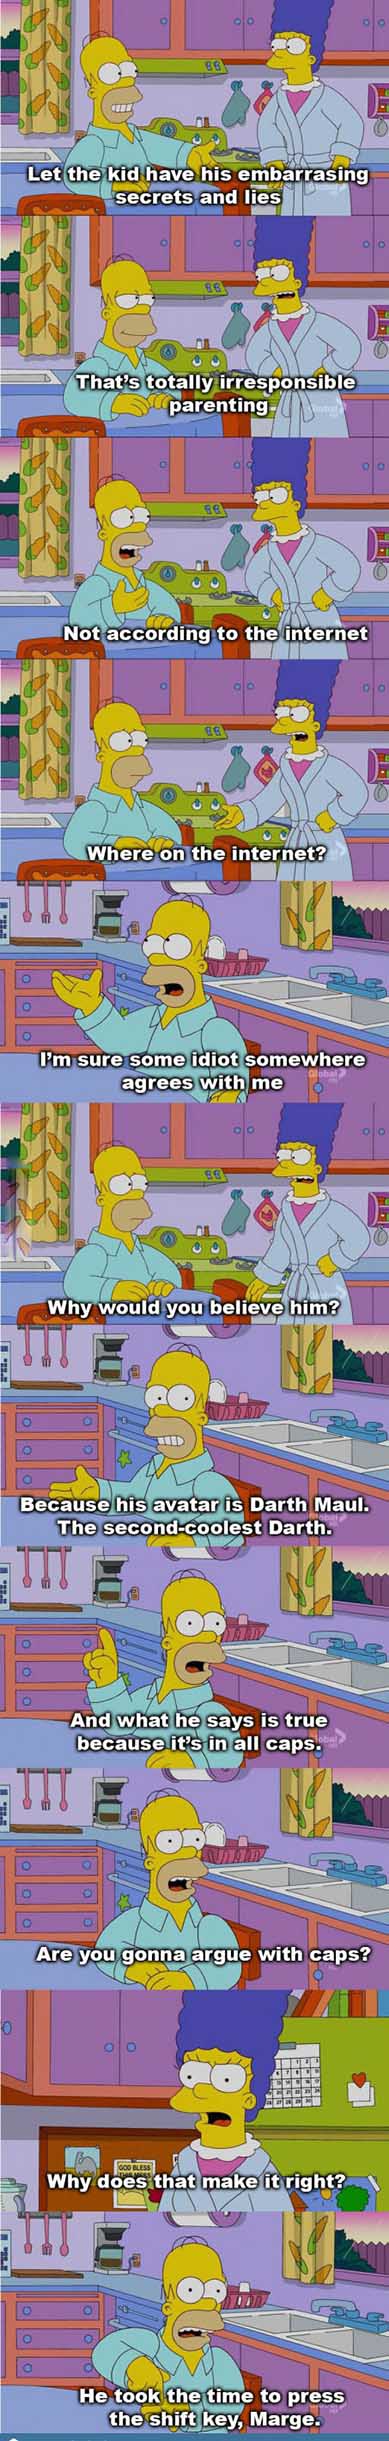 Wisdom from Homer - meme